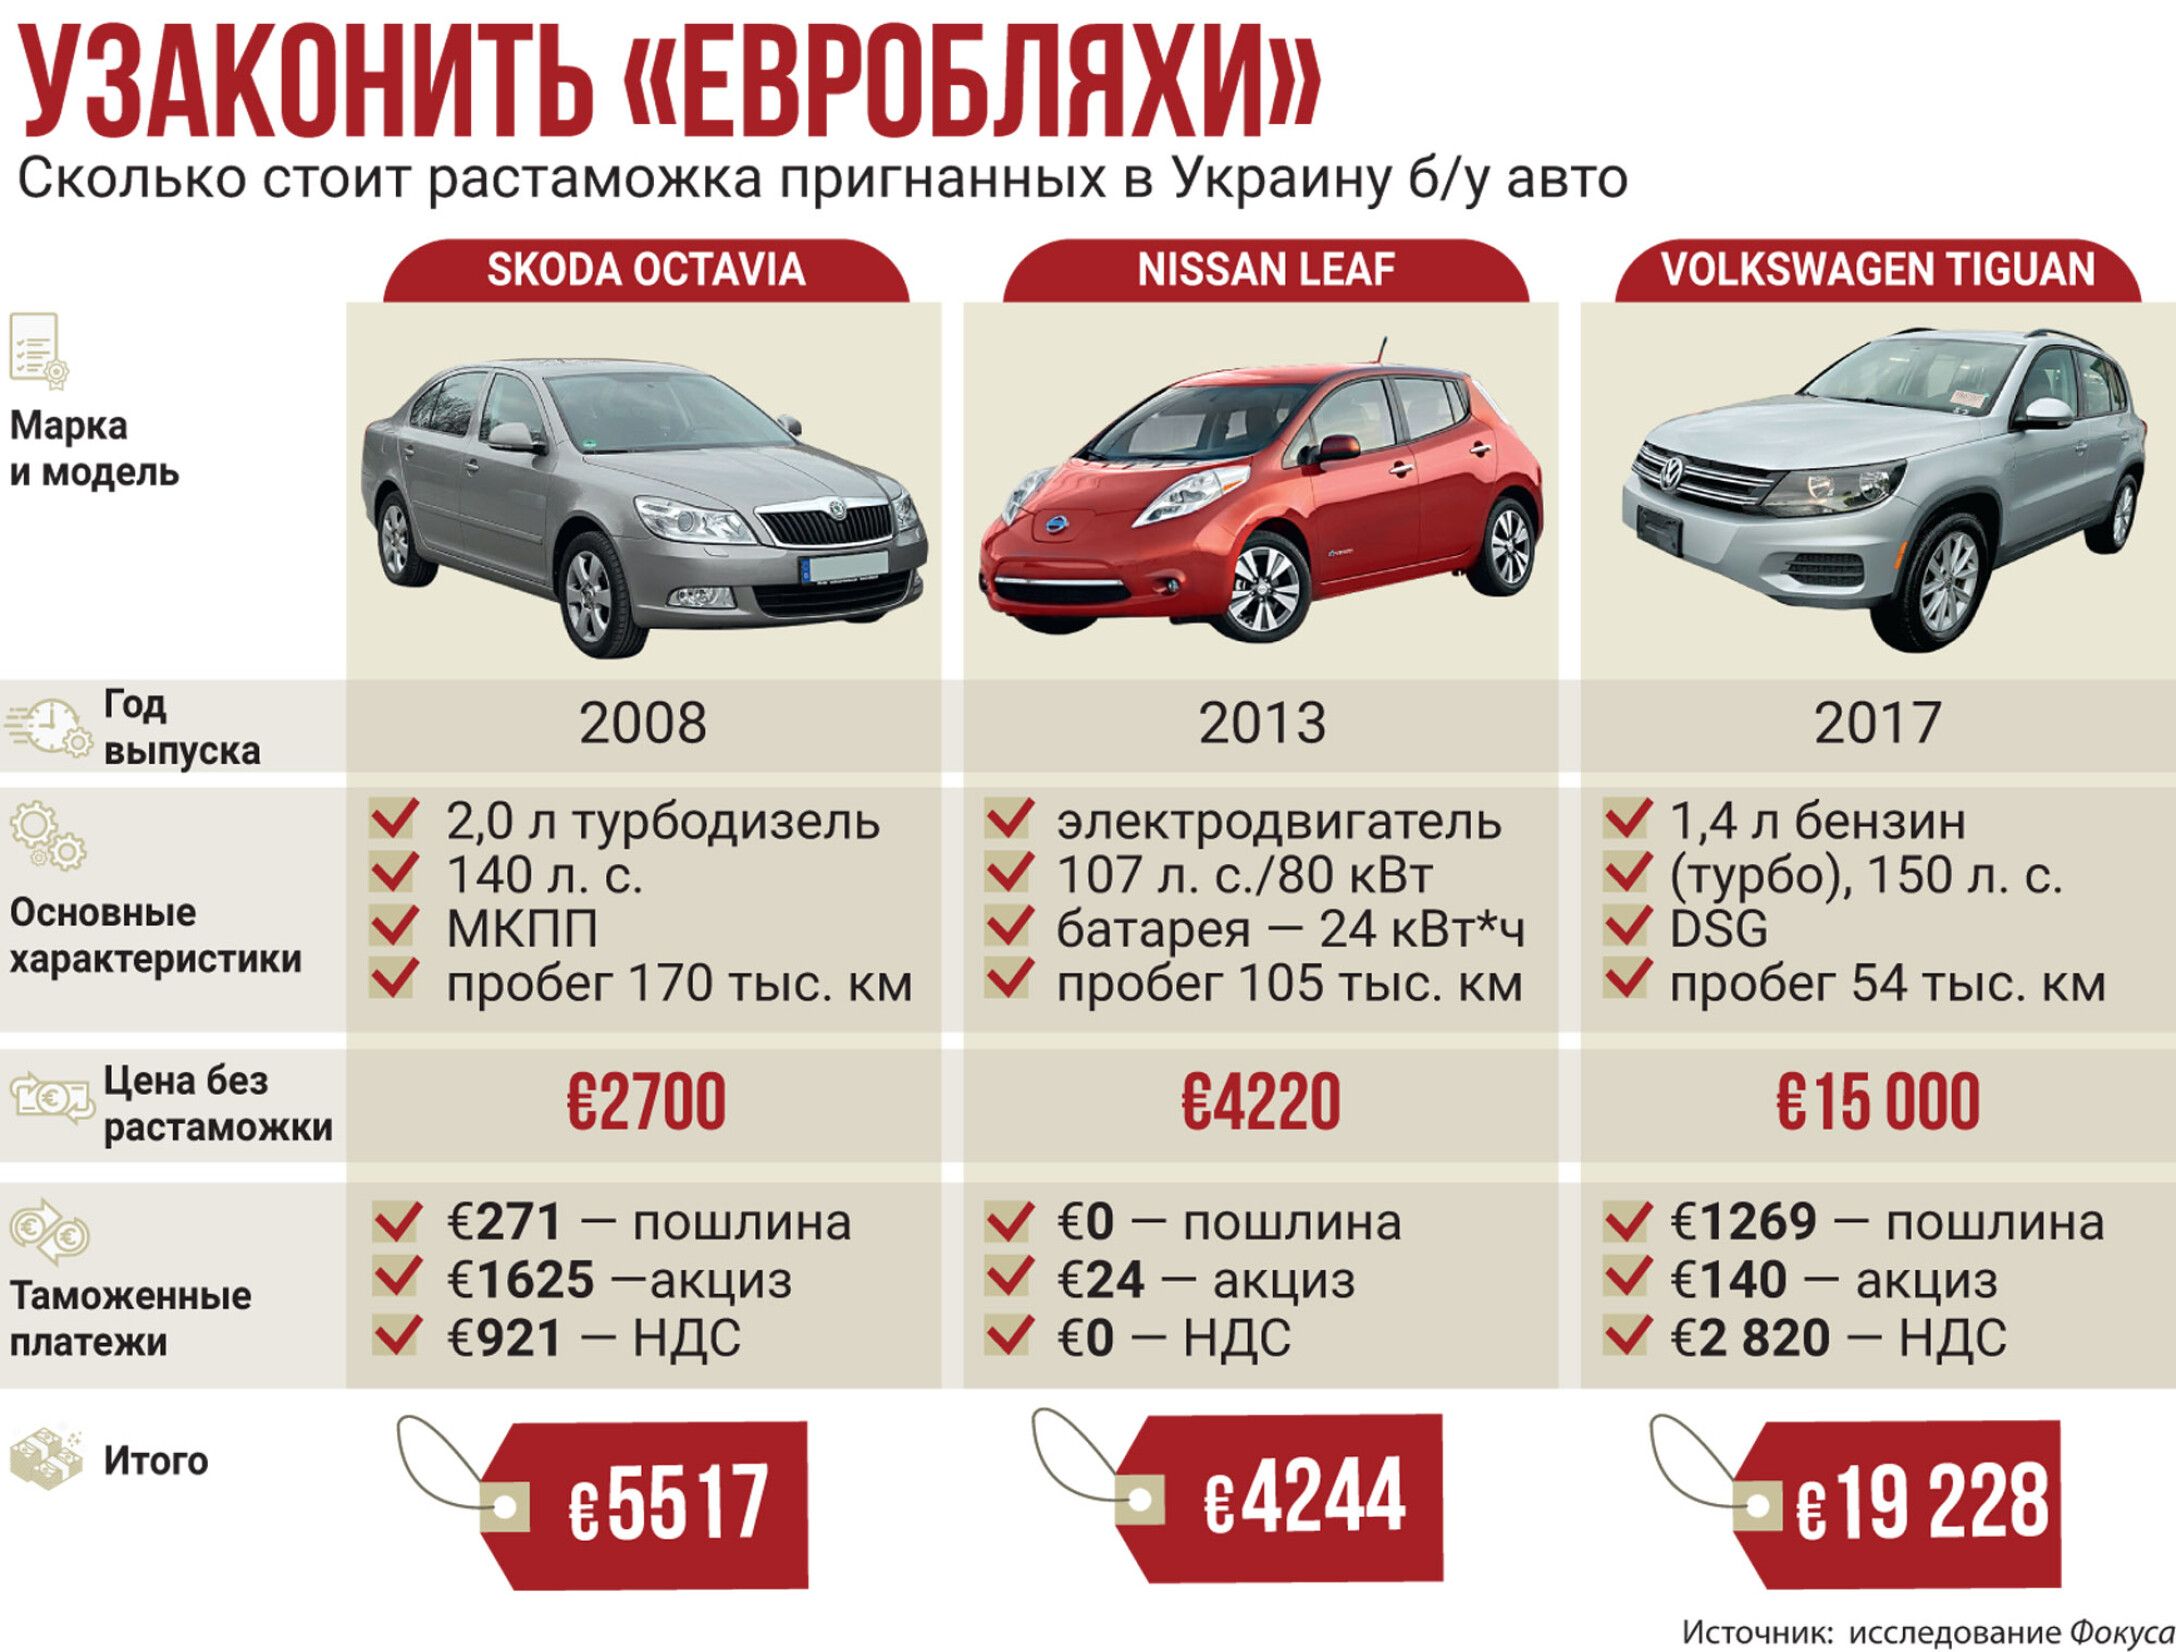 Нужен ли в болгарии автомобиль?